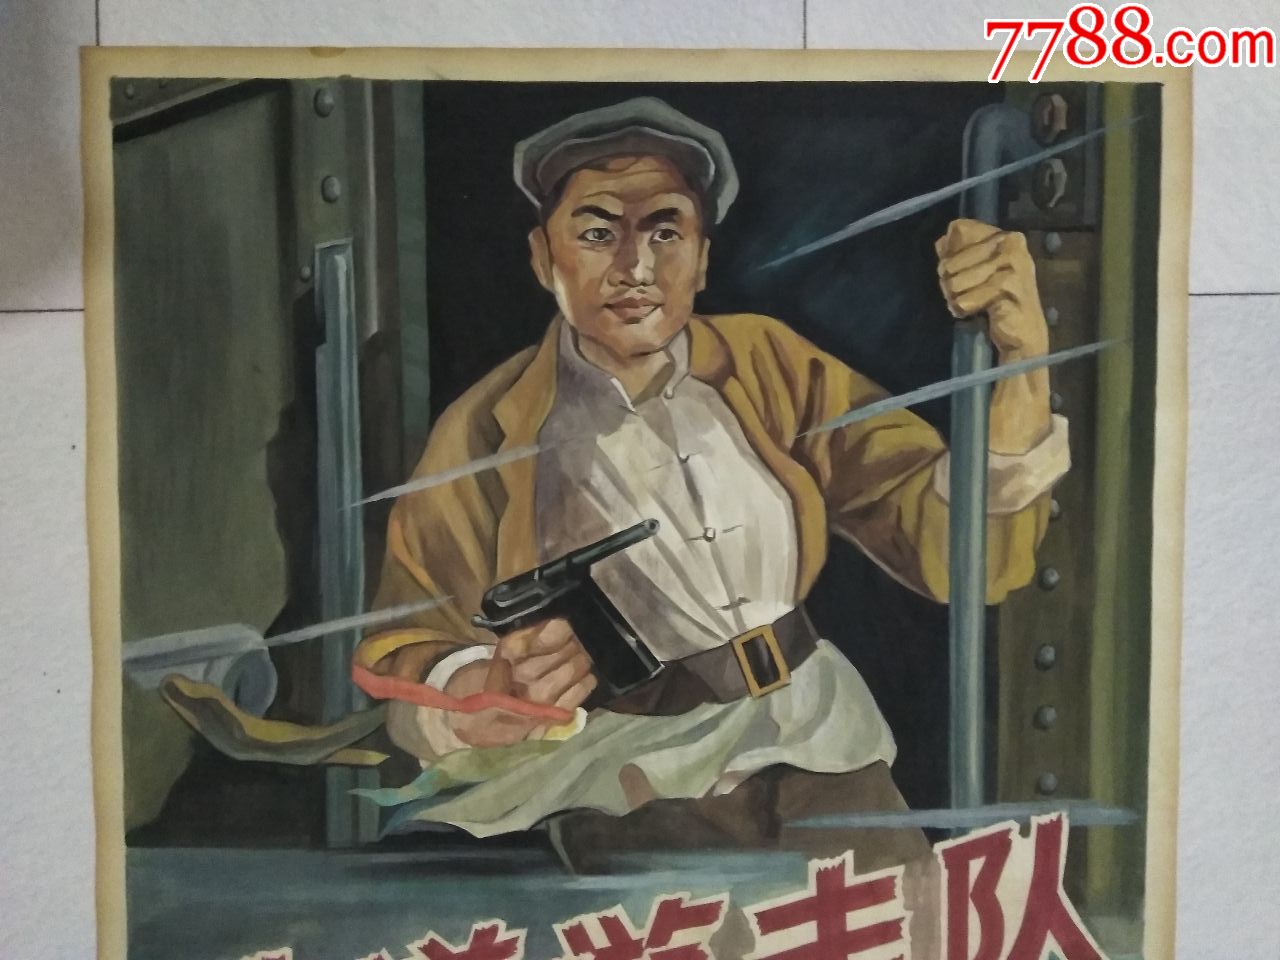 铁道游击队宣传海报图片